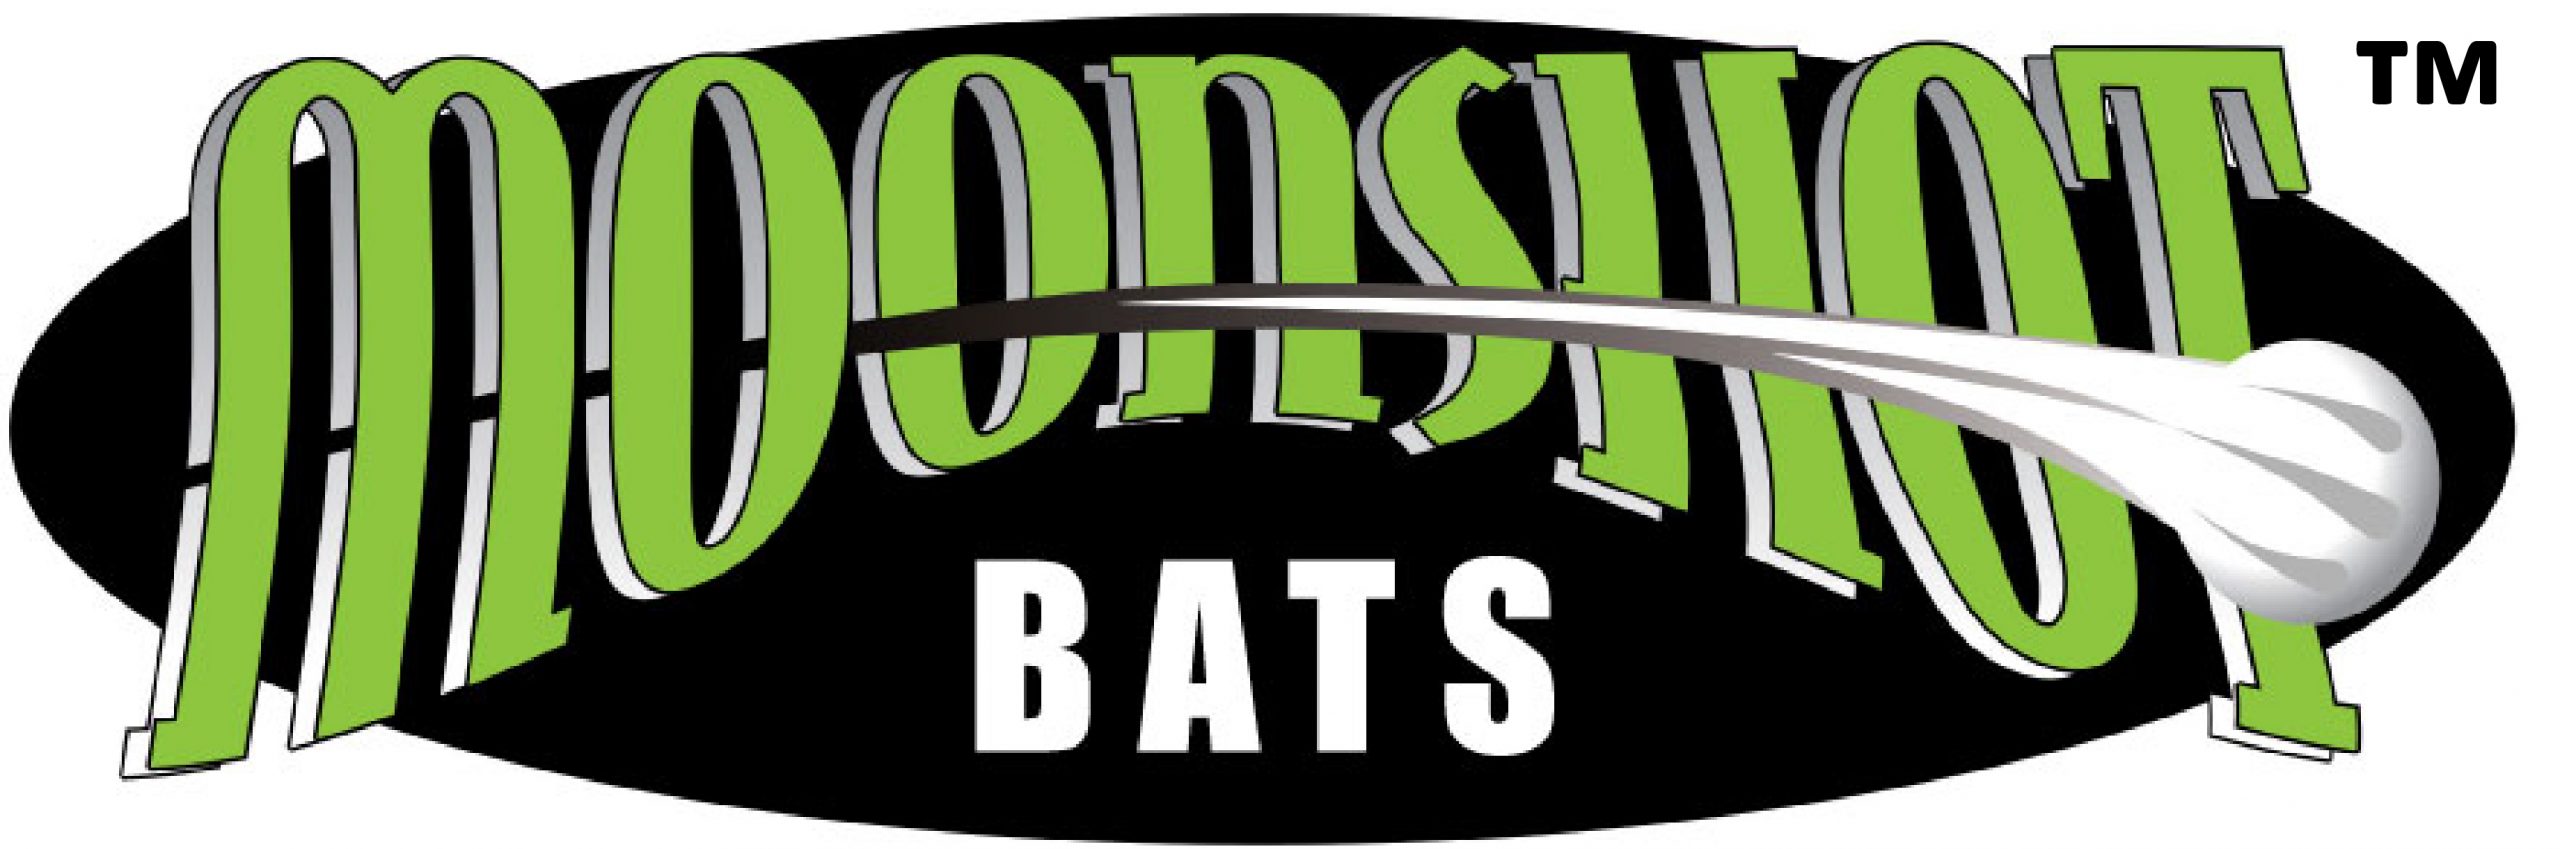 Moonshot Bats